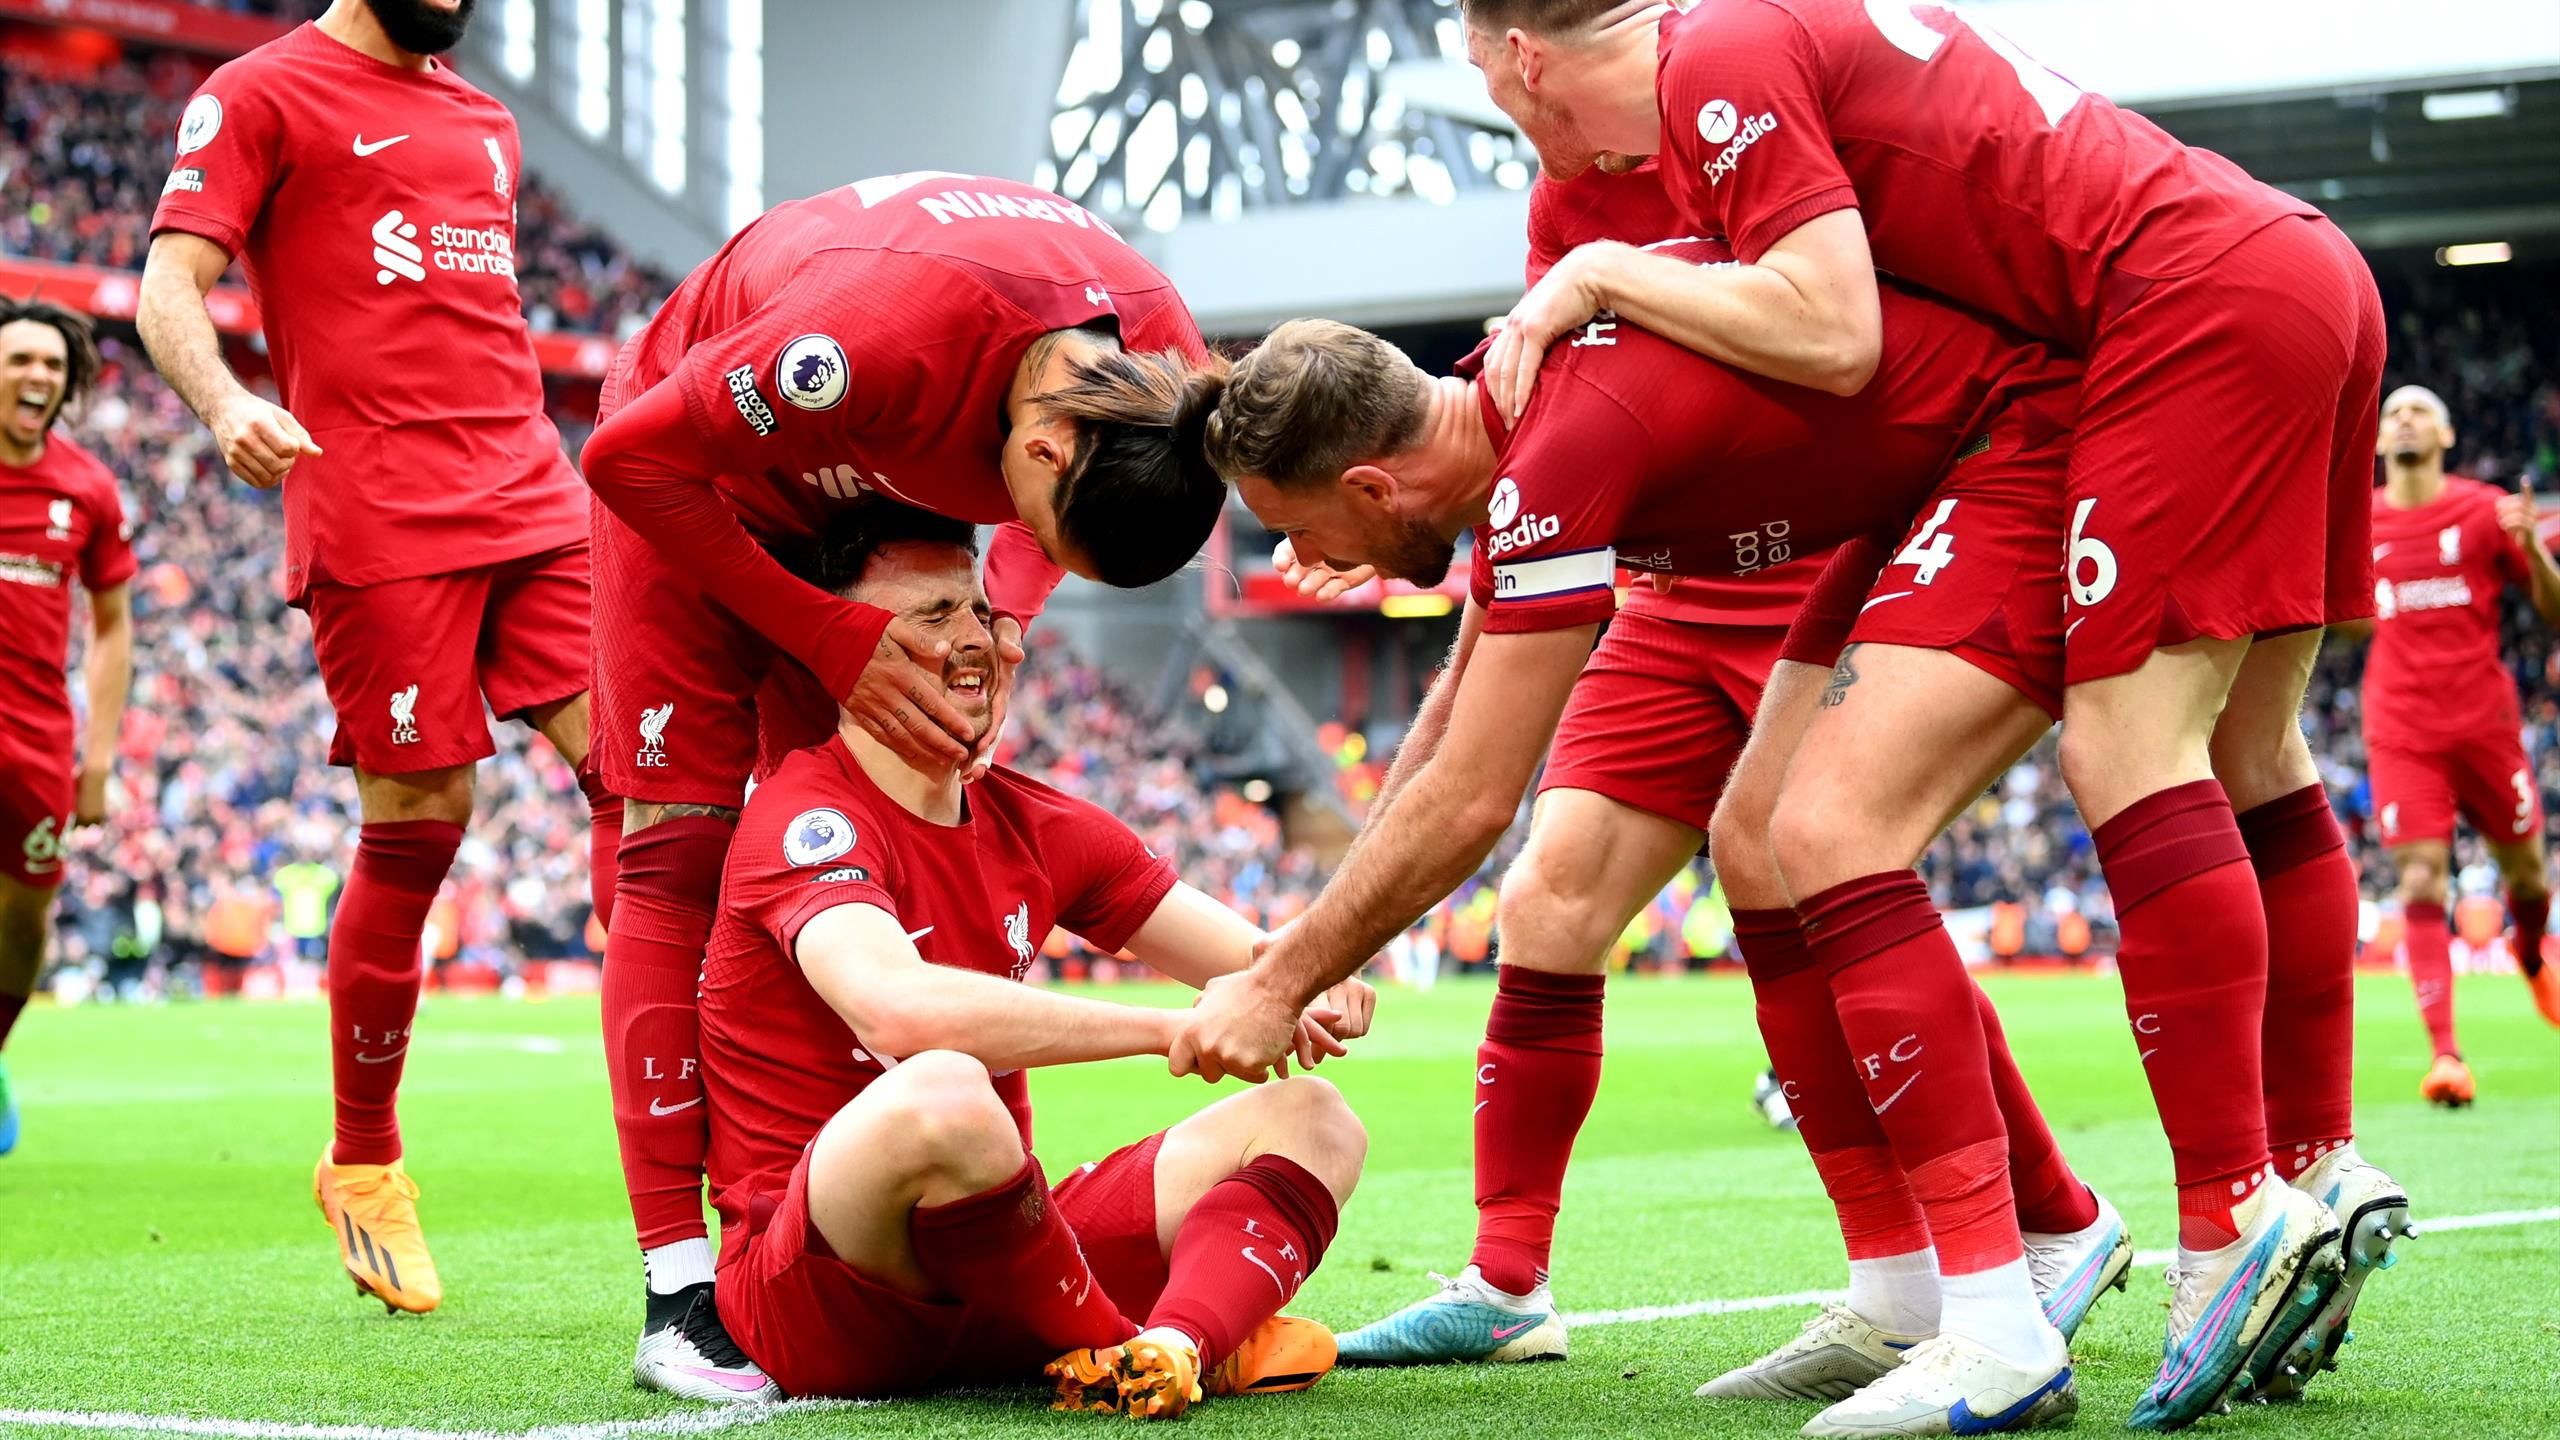 Liverpool empata com Tottenham em casa e se complica no Campeonato Inglês -  Superesportes